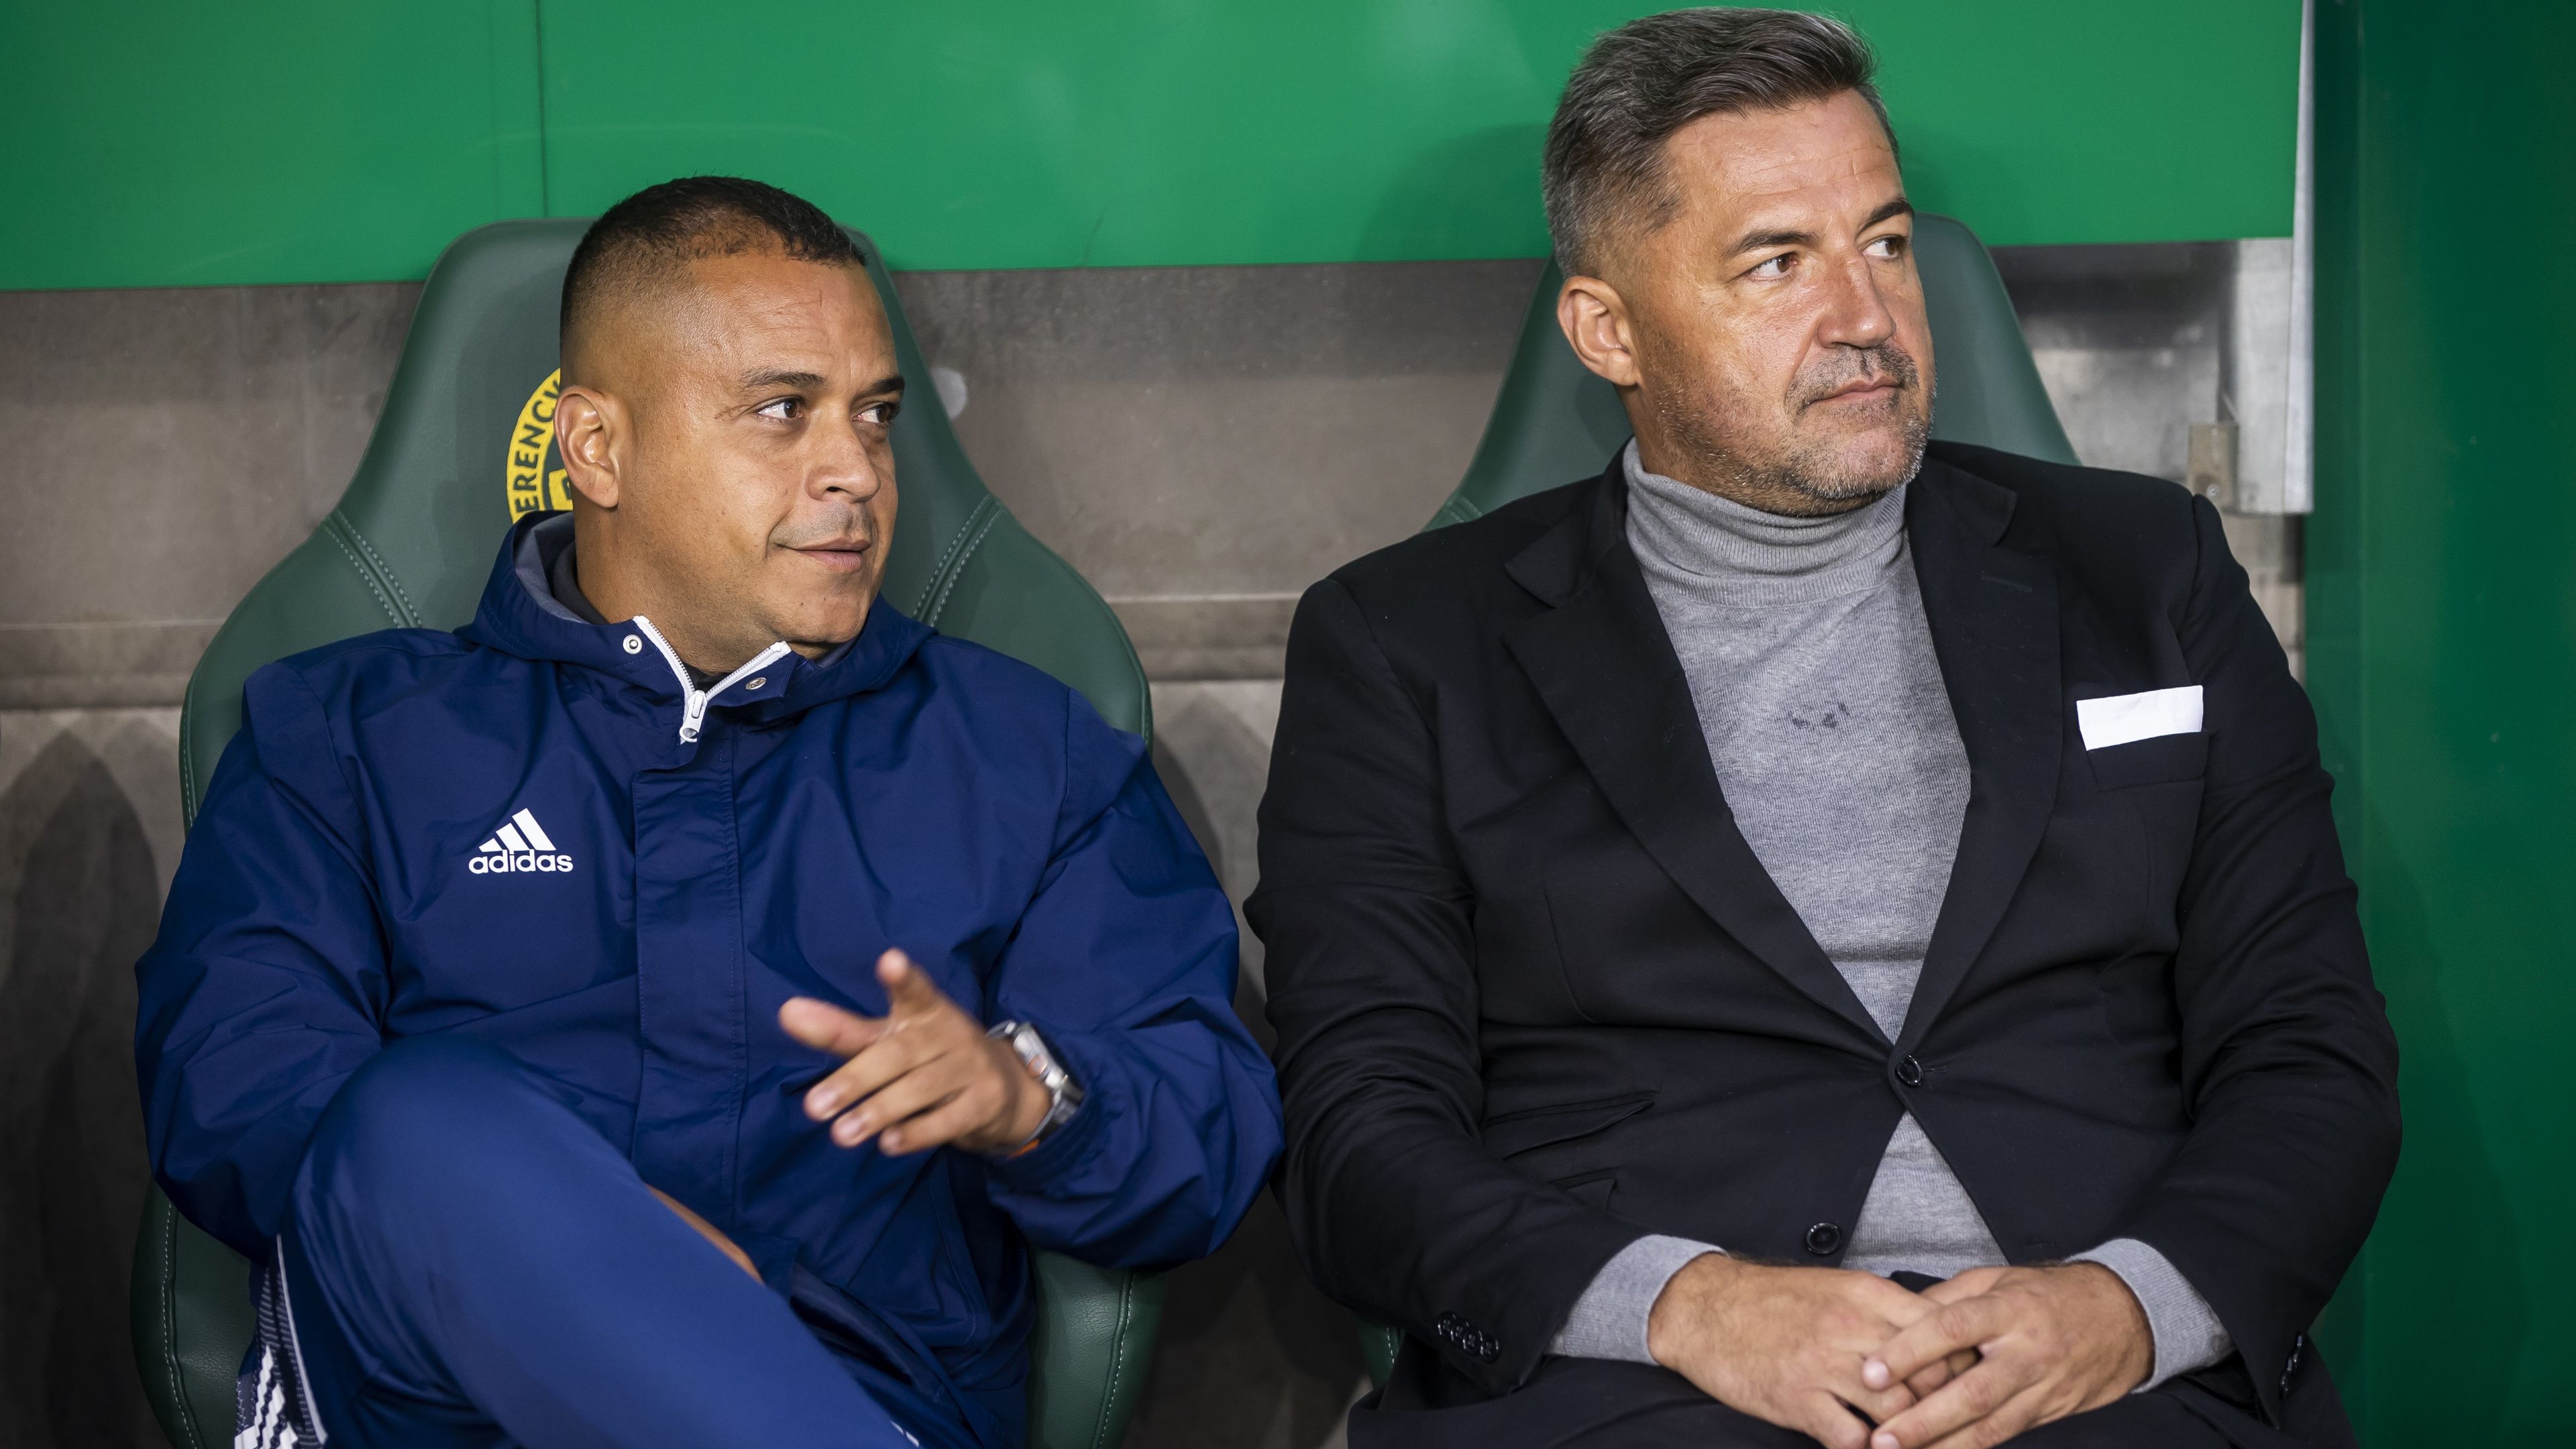 Merre tovább? Mátyus János (jobbra) és Felipe Matos évek óta együtt dolgozik, most újra közösen váltanak klubot. (Fotó: Czerkl Gábor)